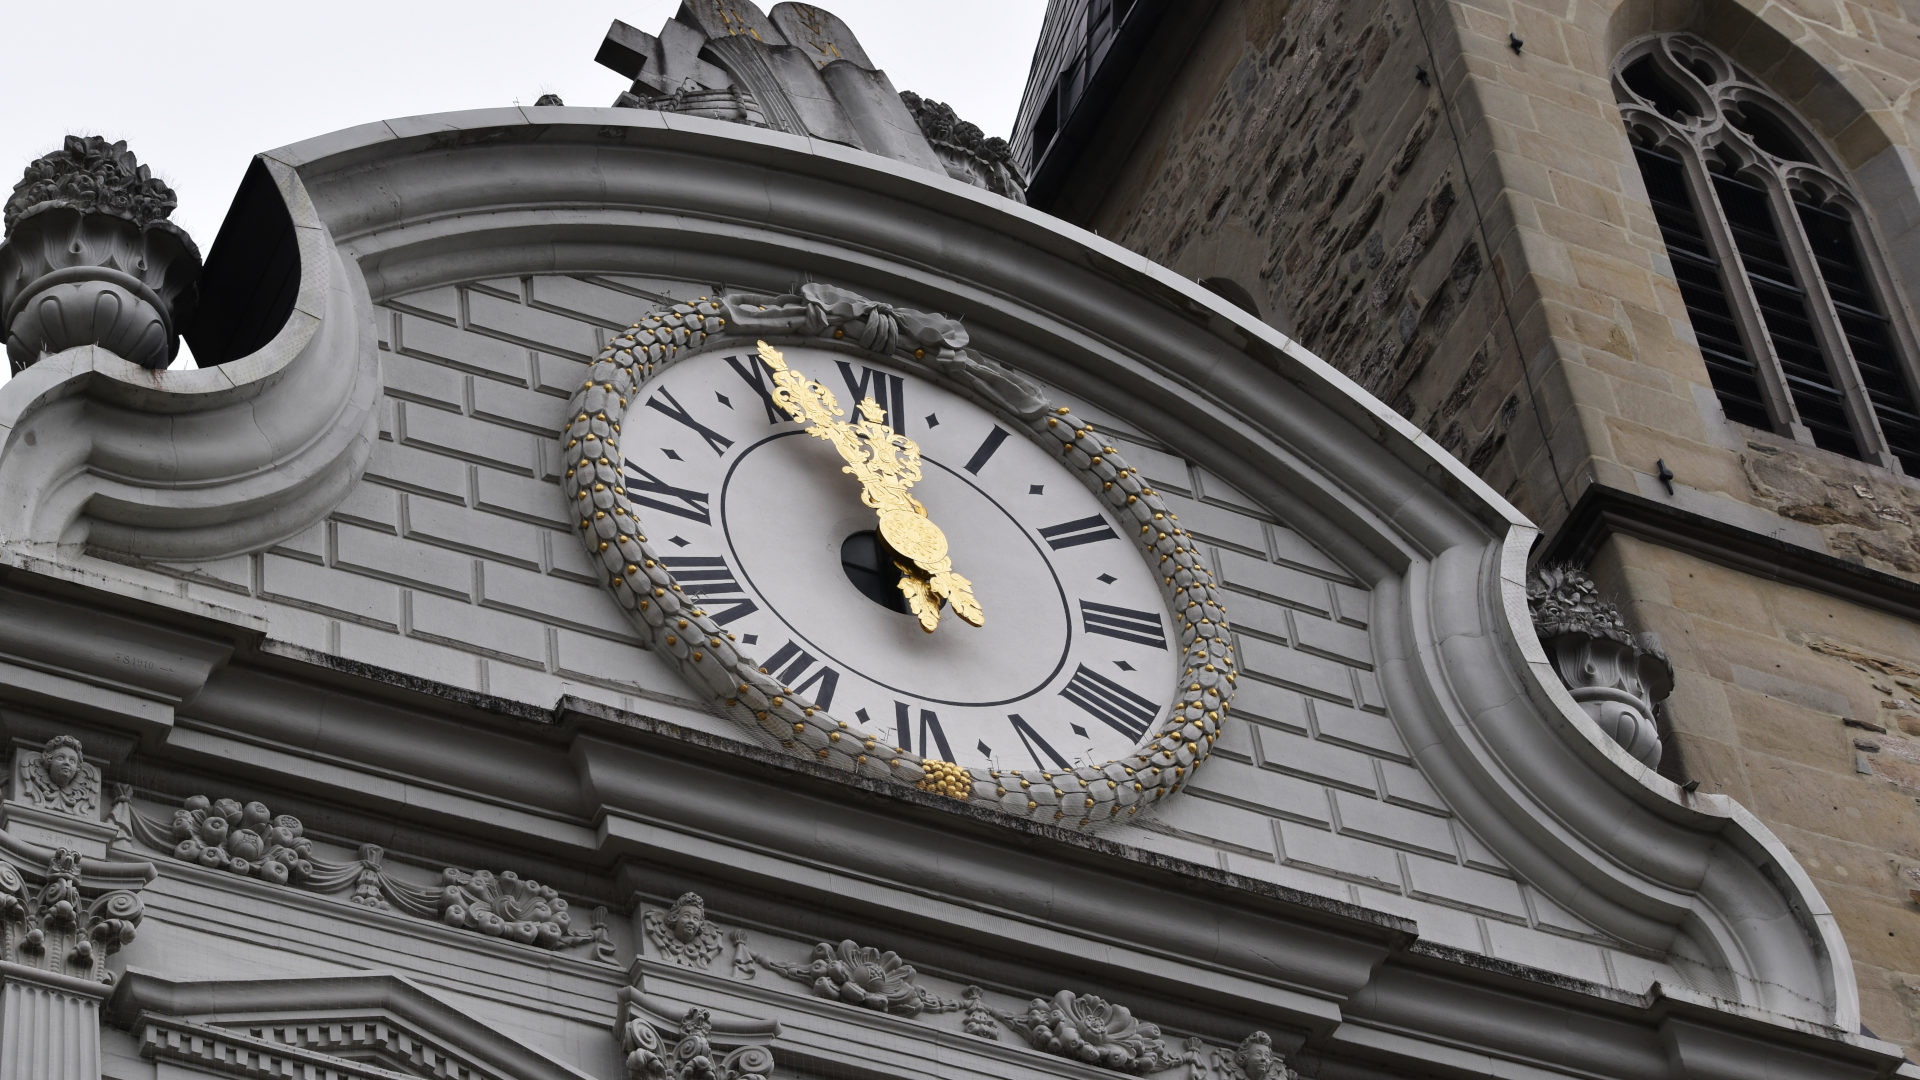 Die Uhr der Luzerner Hofkirche stand während der Klimademo im April auf fünf vor zwölf.